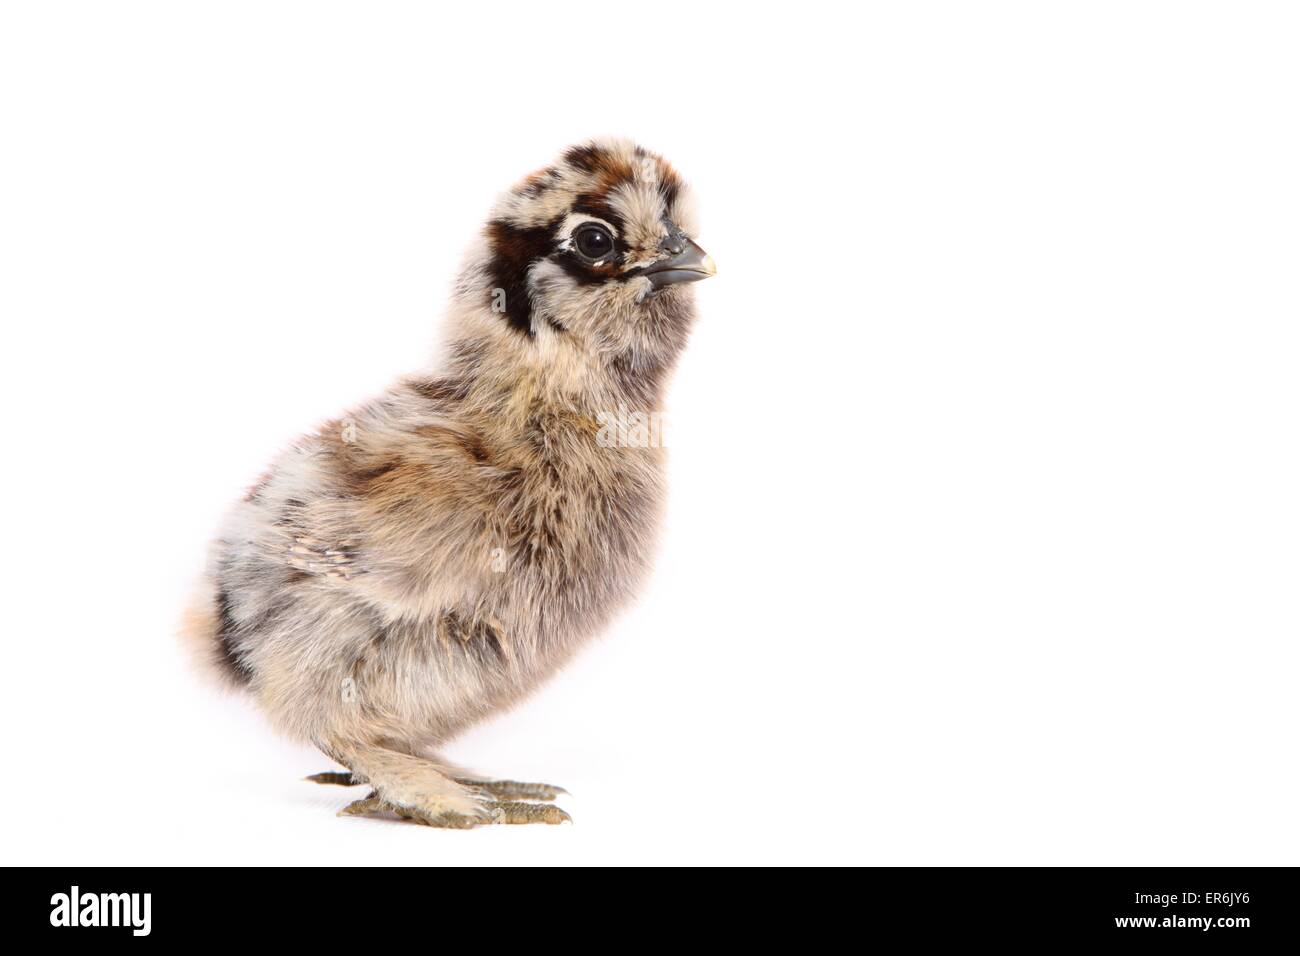 Sedoso Fowl chick Foto de stock